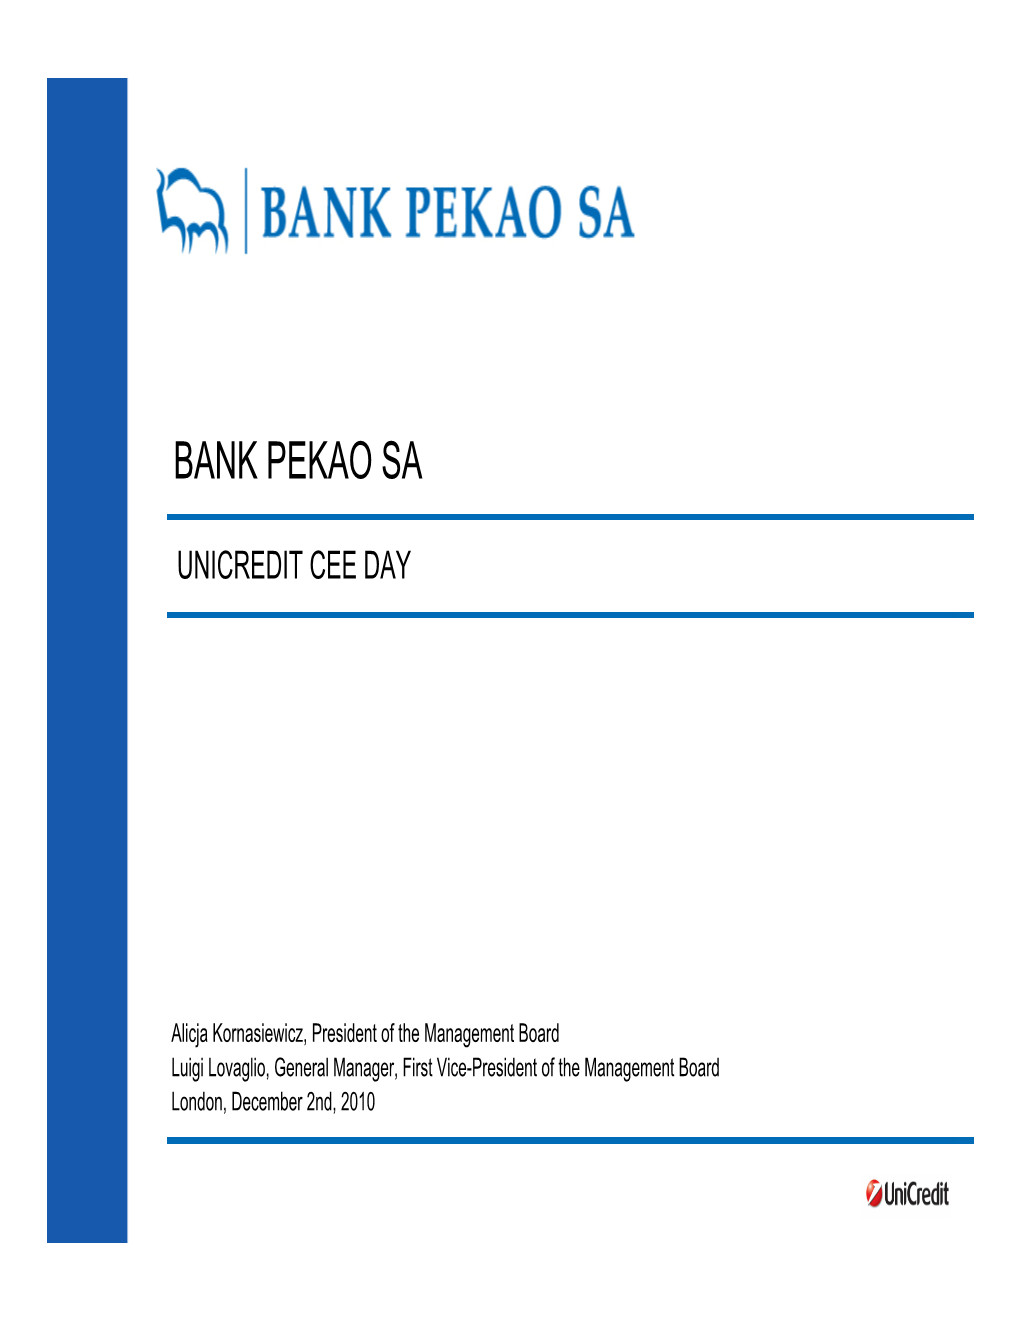 Bank Pekao Sa